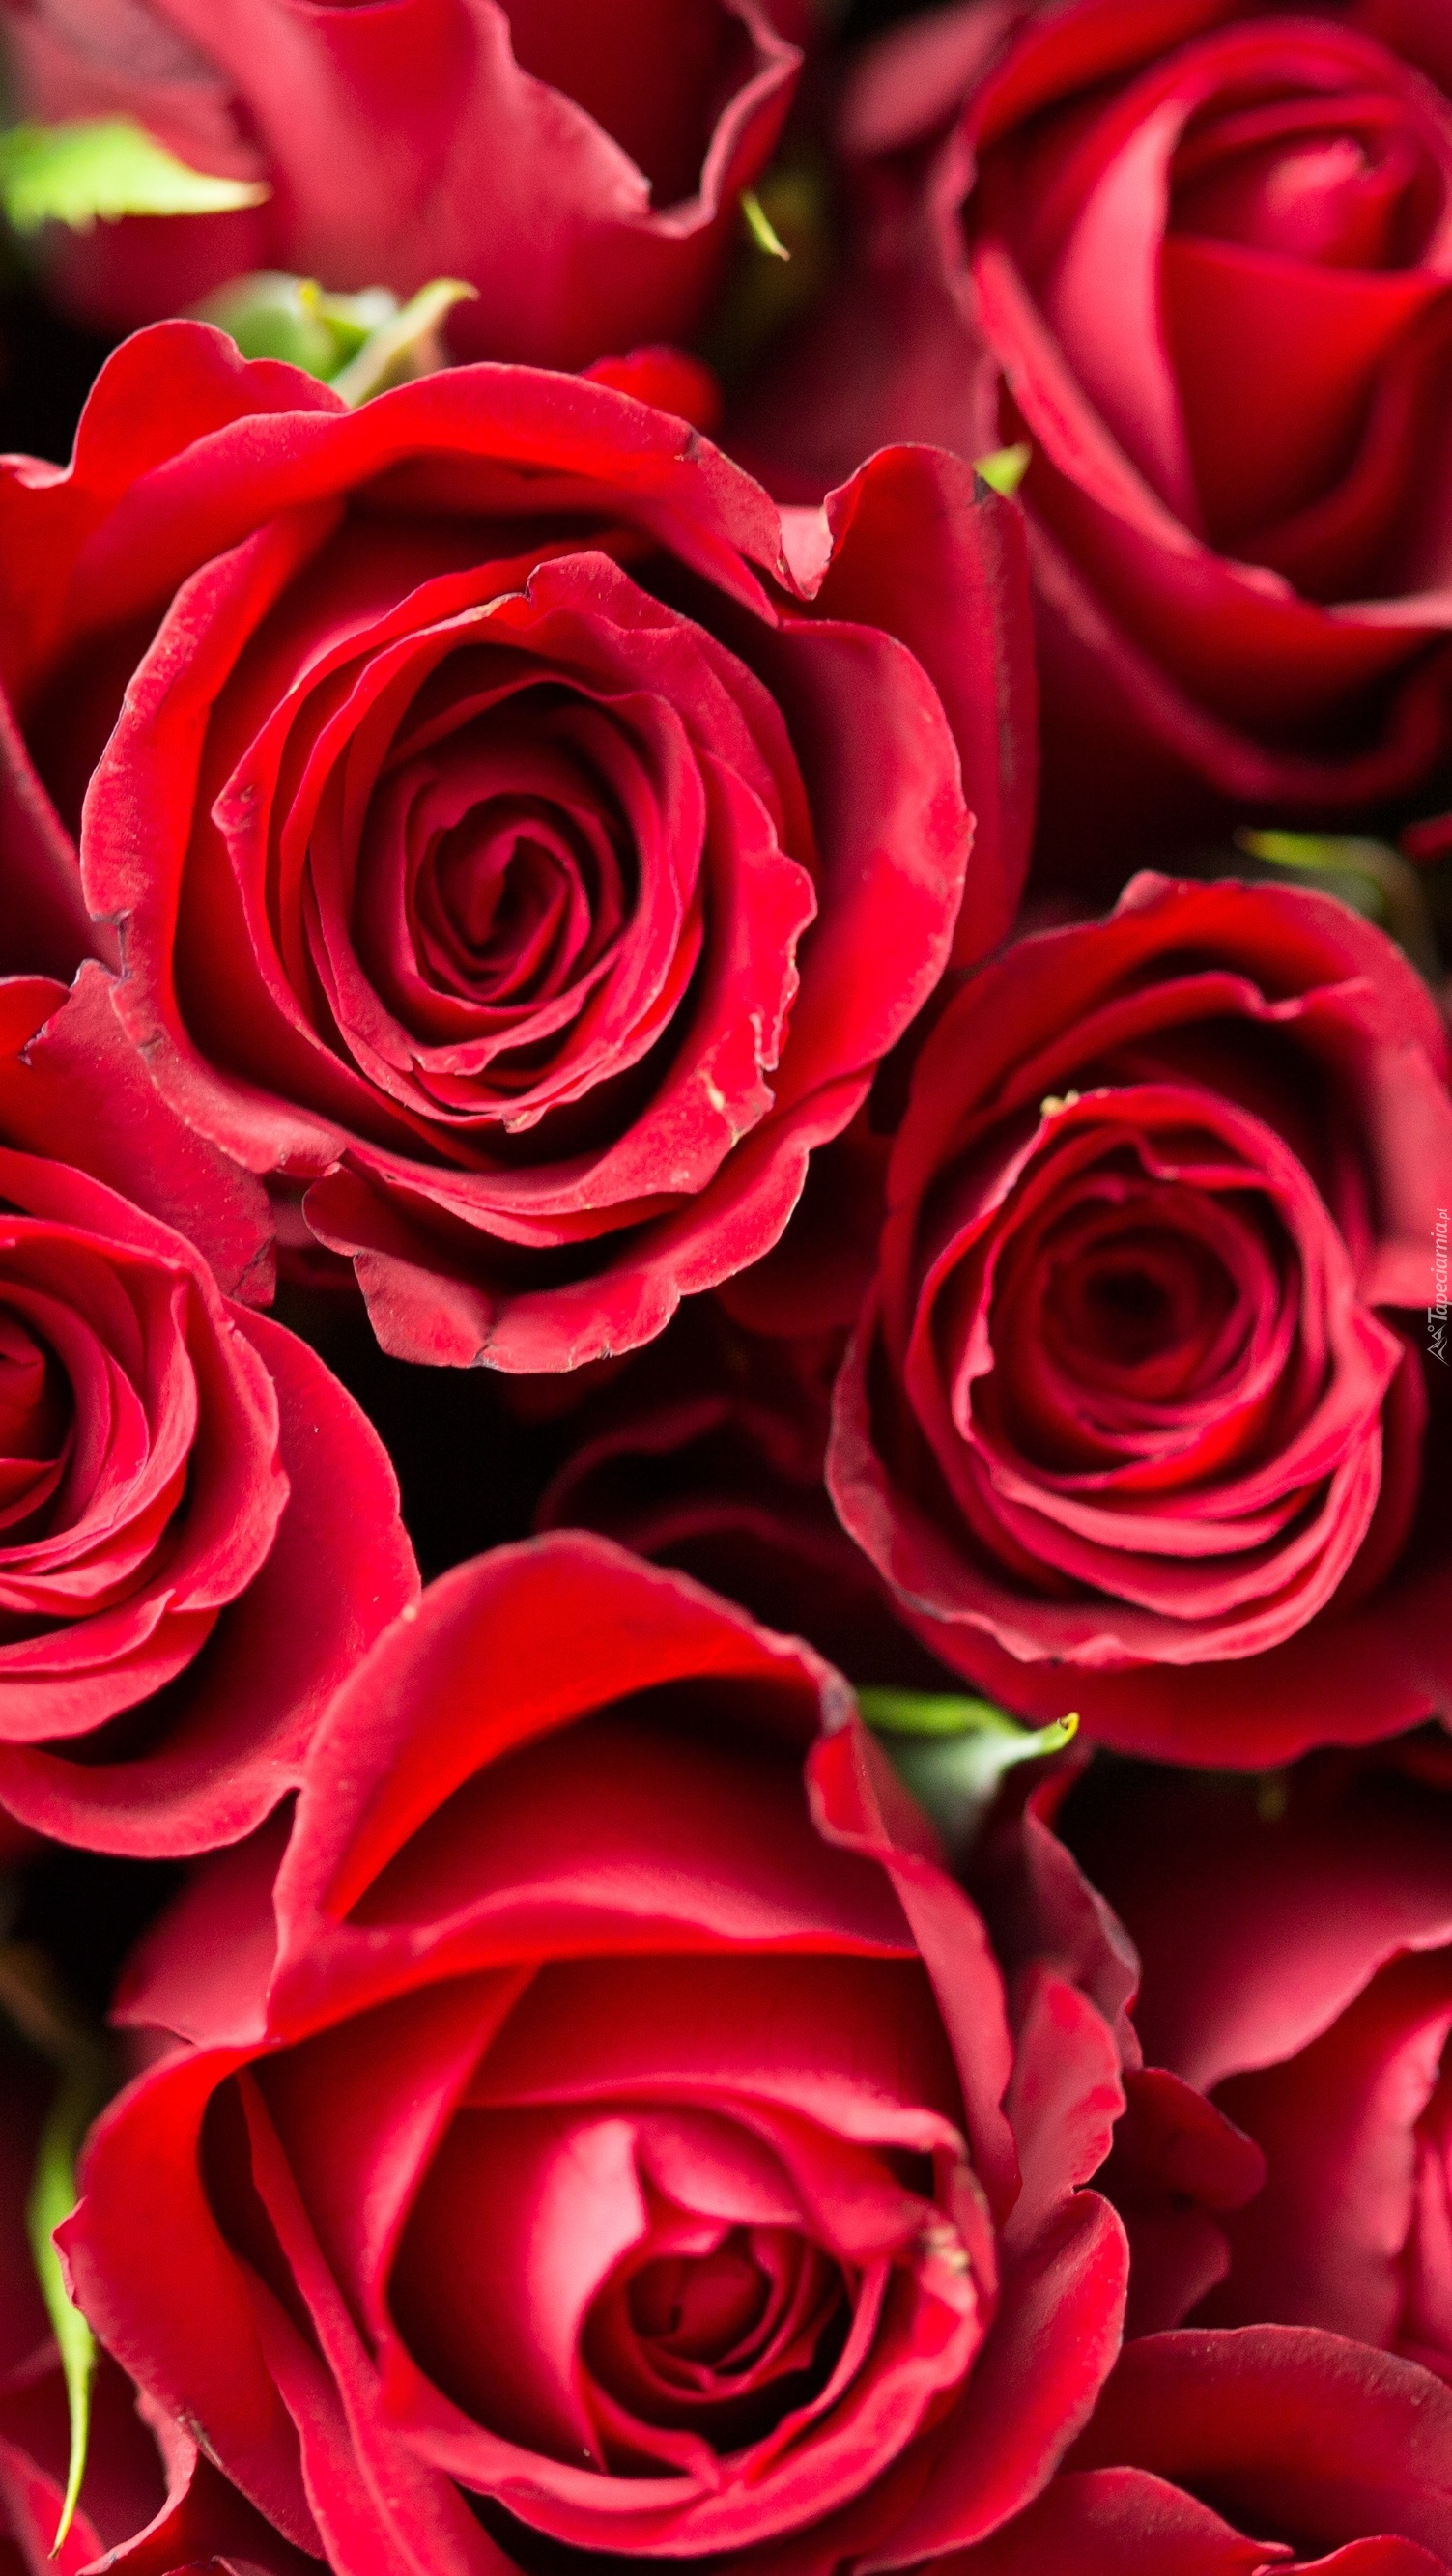 Czerwone róże dostałam dziś od Ciebie